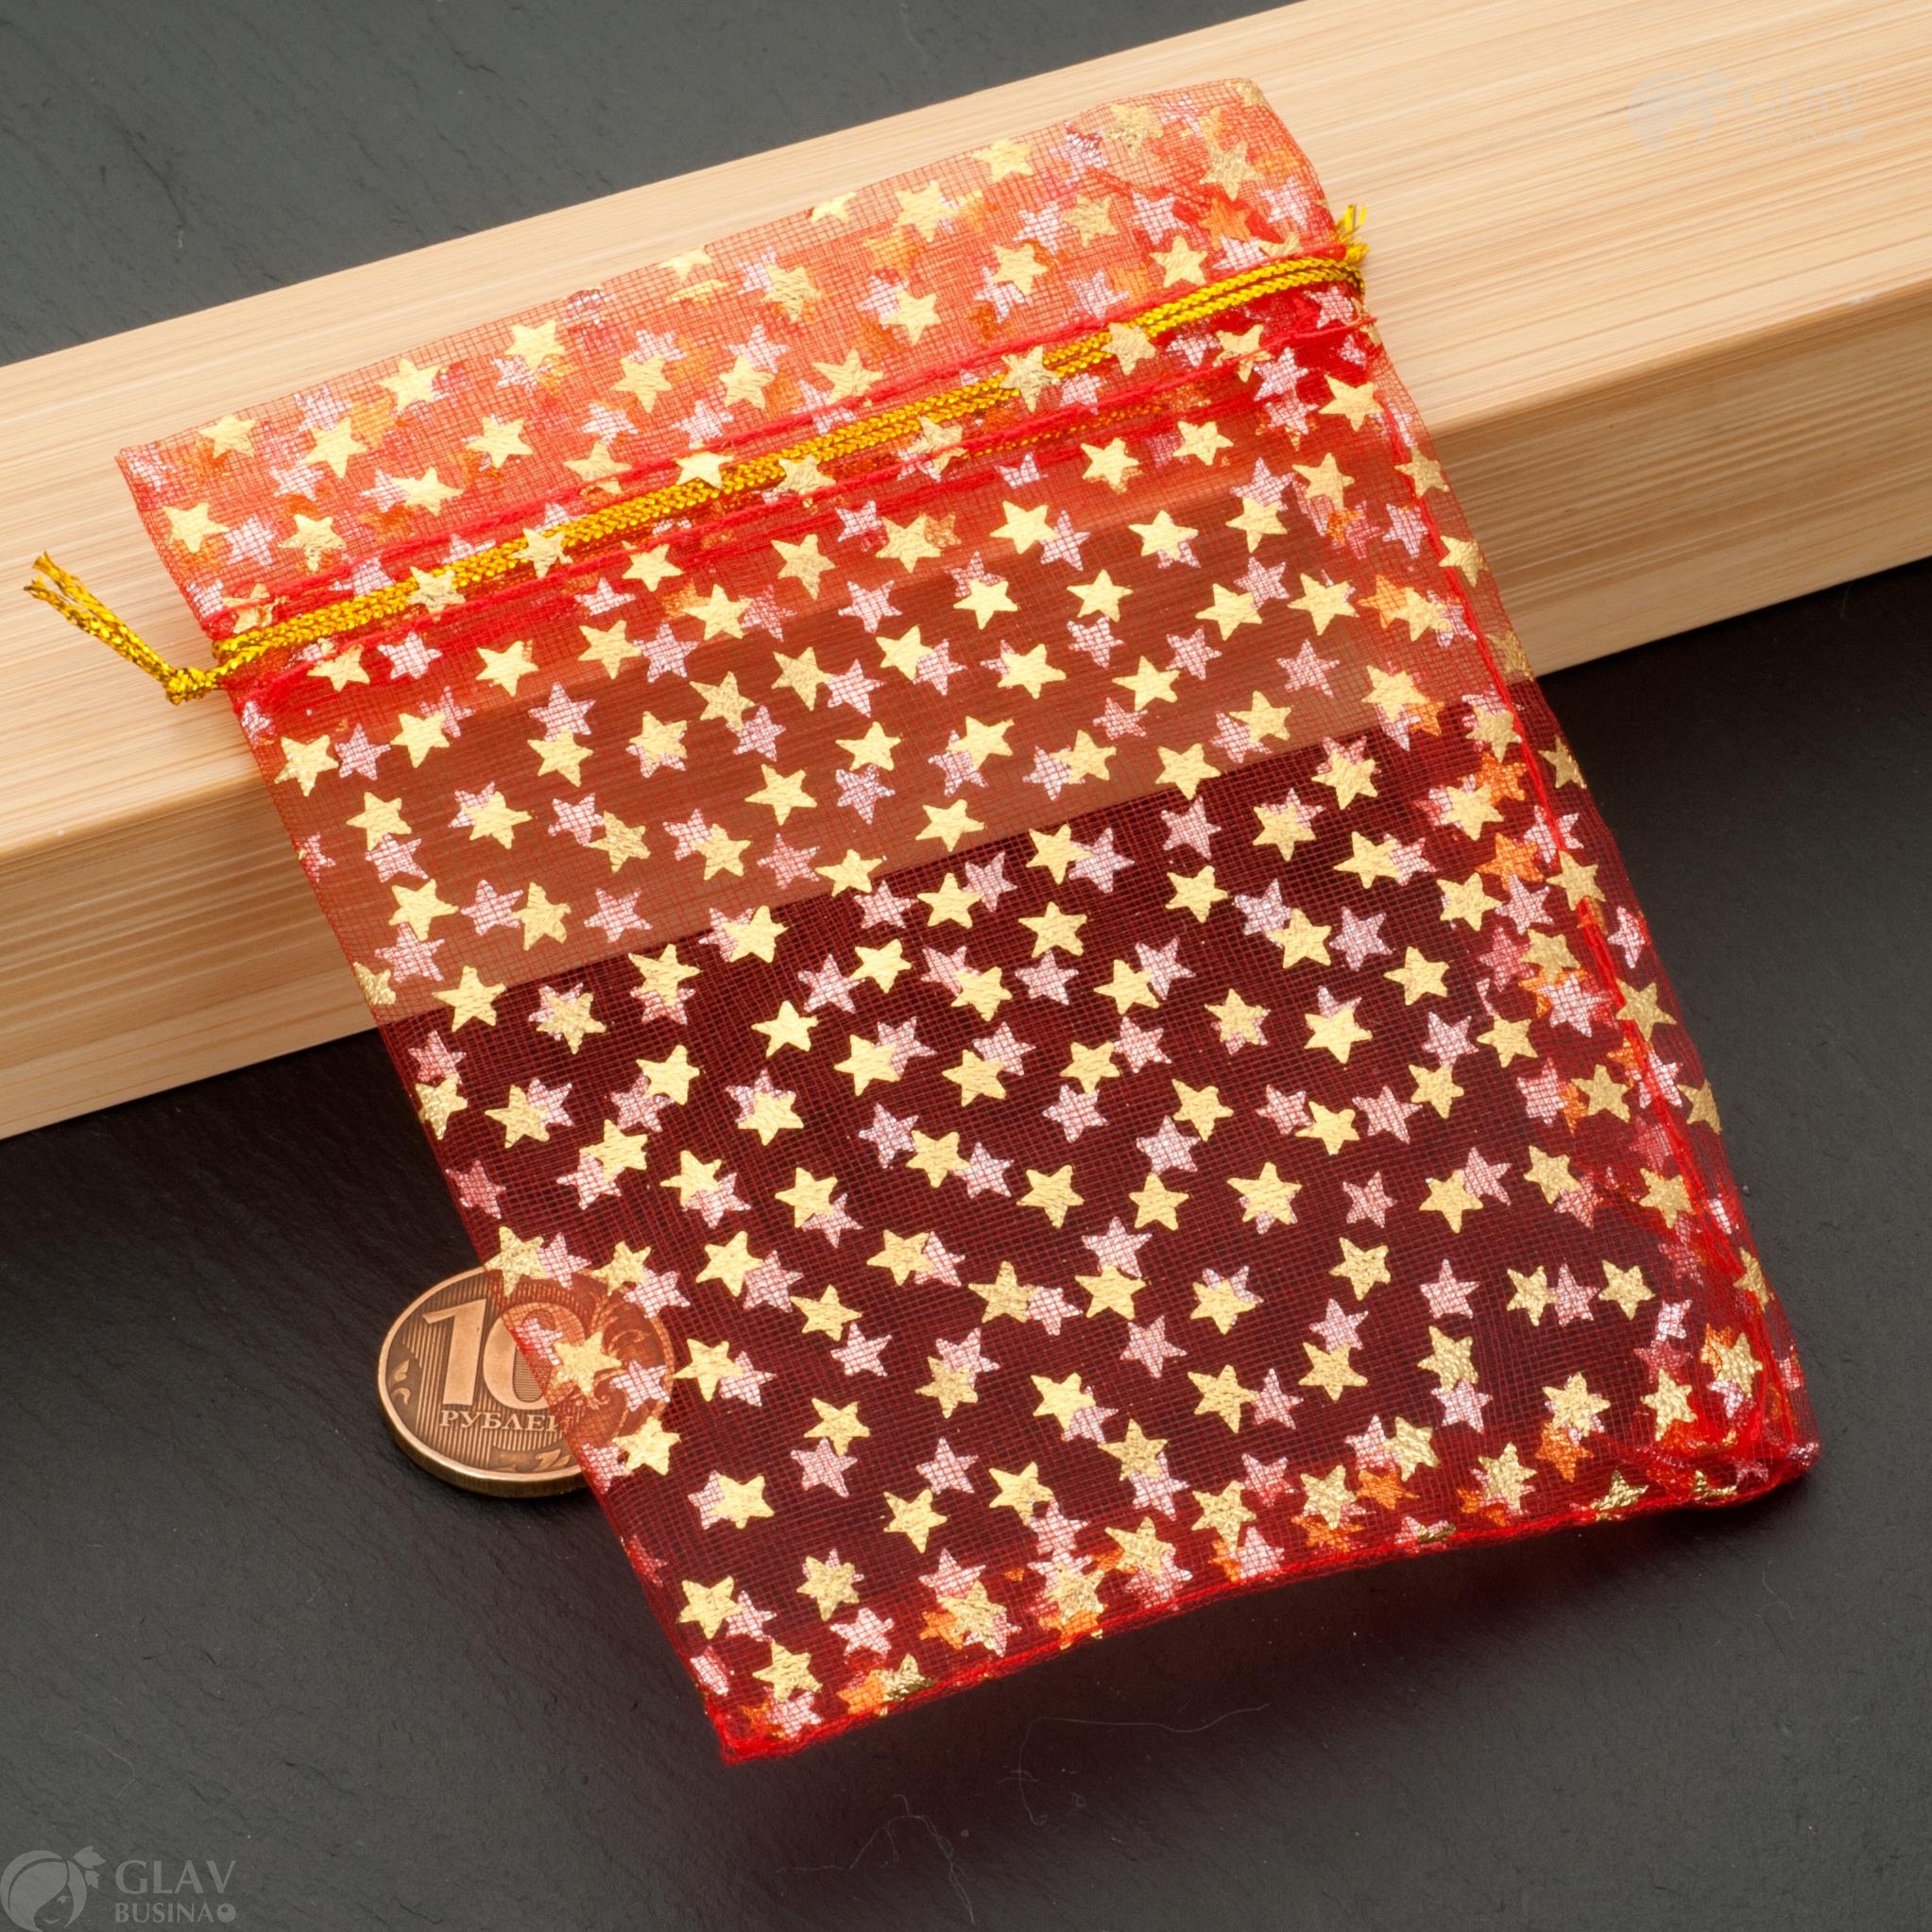 Красные мешочки из органзы с золотистыми звездами, размер 10x12 см, идеальны для подарков и упаковки.